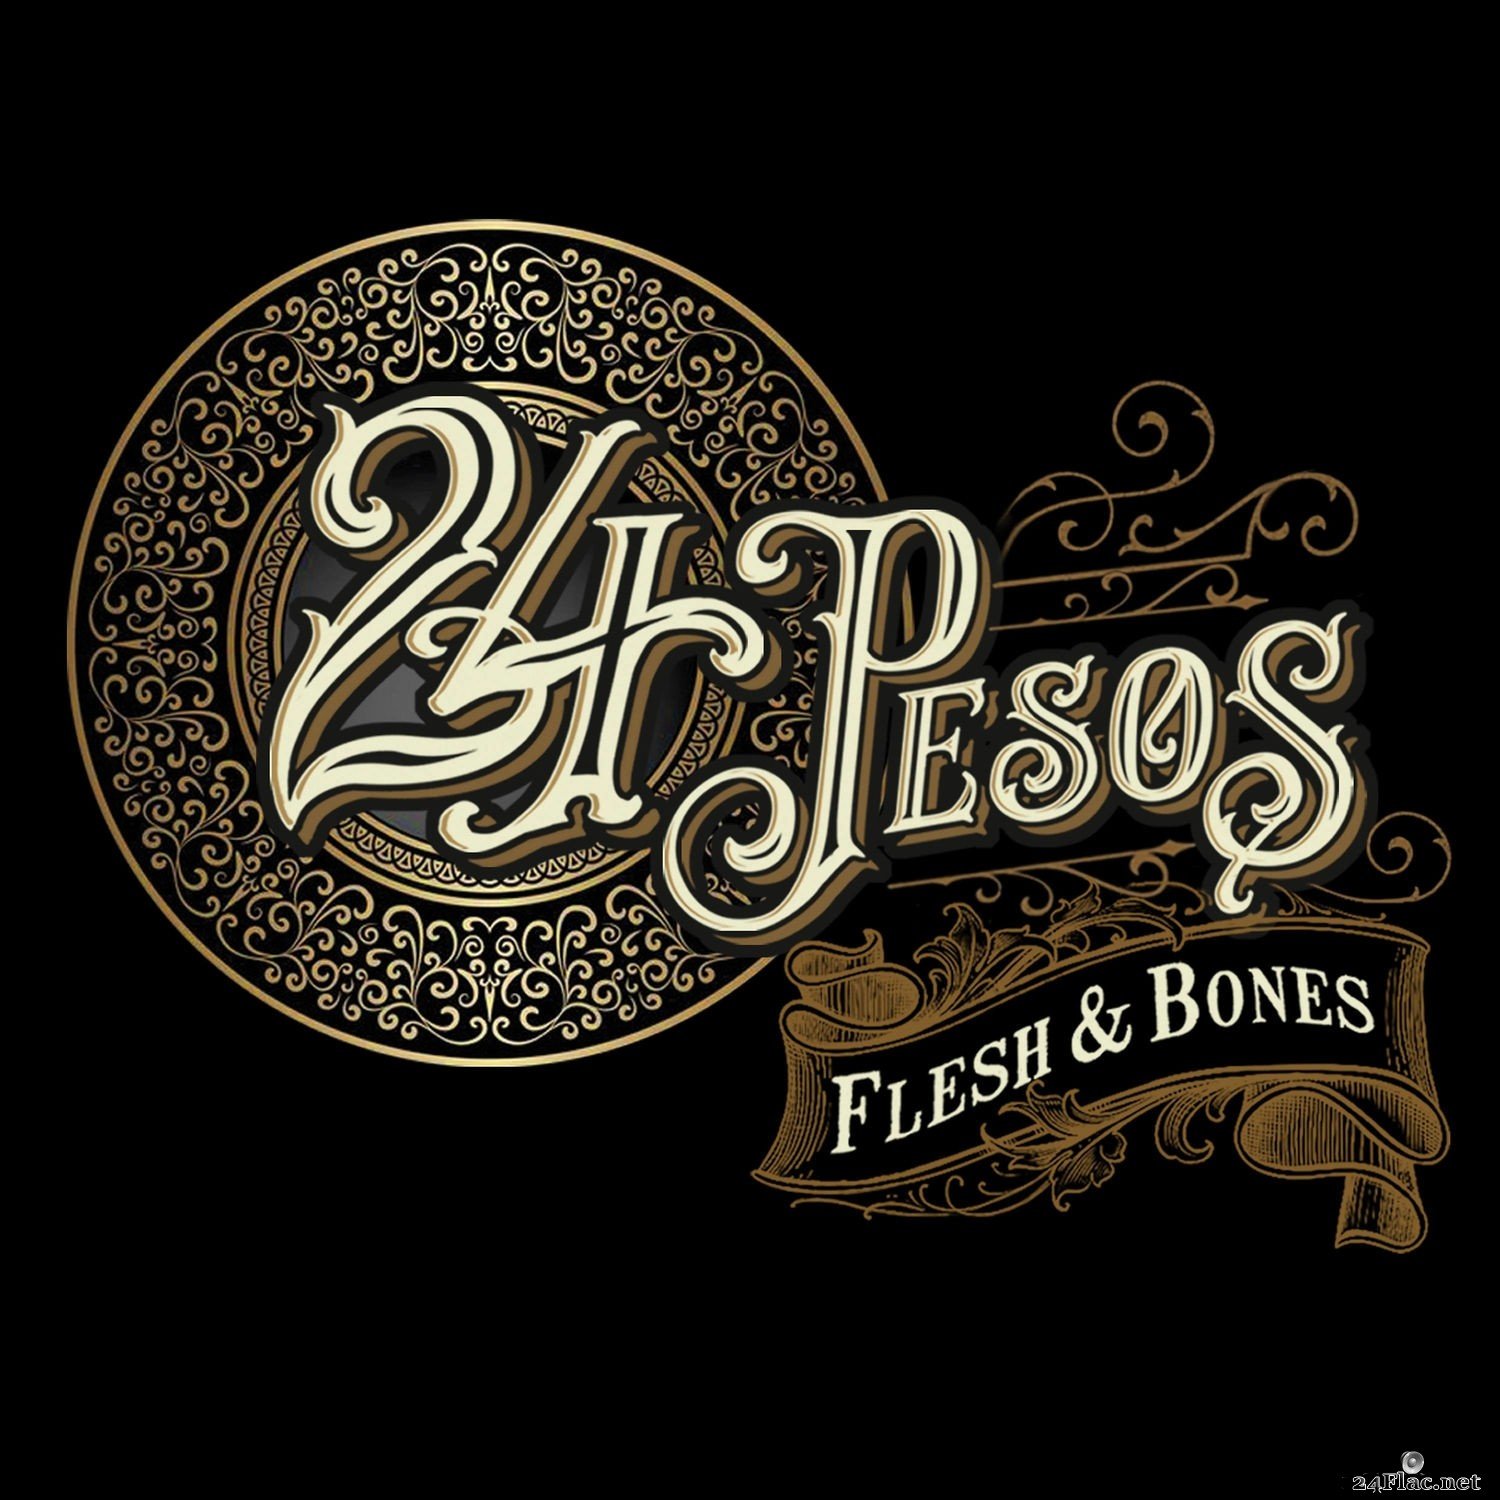 24 Pesos - Flesh & Bones (2019) Hi-Res